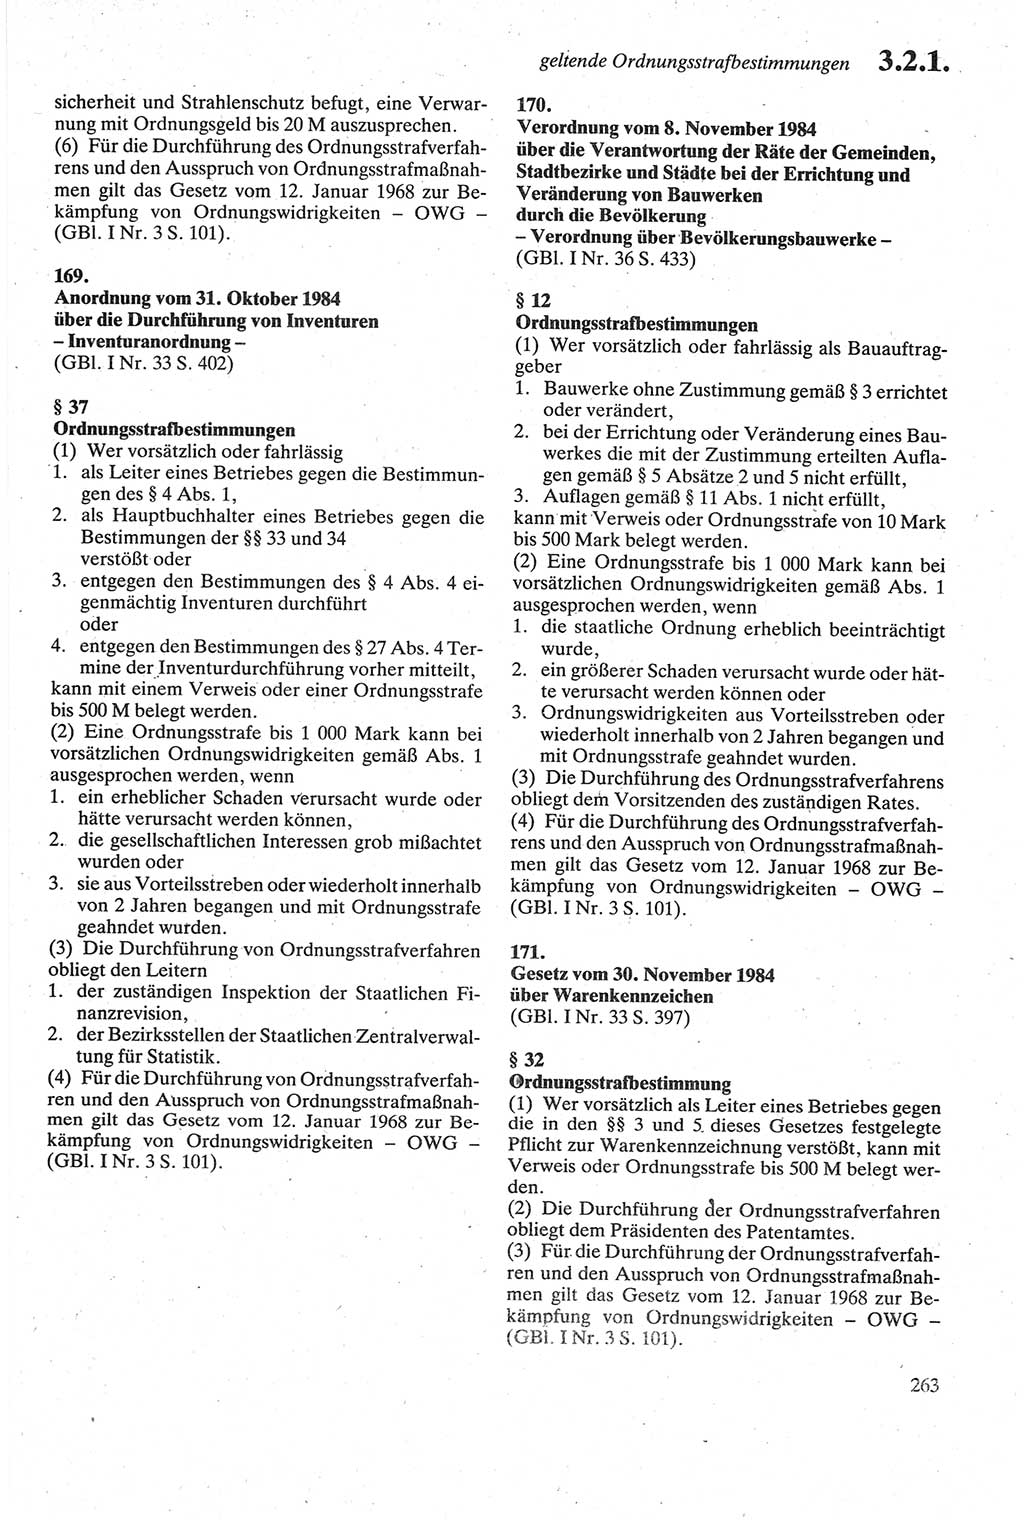 Strafgesetzbuch (StGB) der Deutschen Demokratischen Republik (DDR) sowie angrenzende Gesetze und Bestimmungen 1979, Seite 263 (StGB DDR Ges. Best. 1979, S. 263)